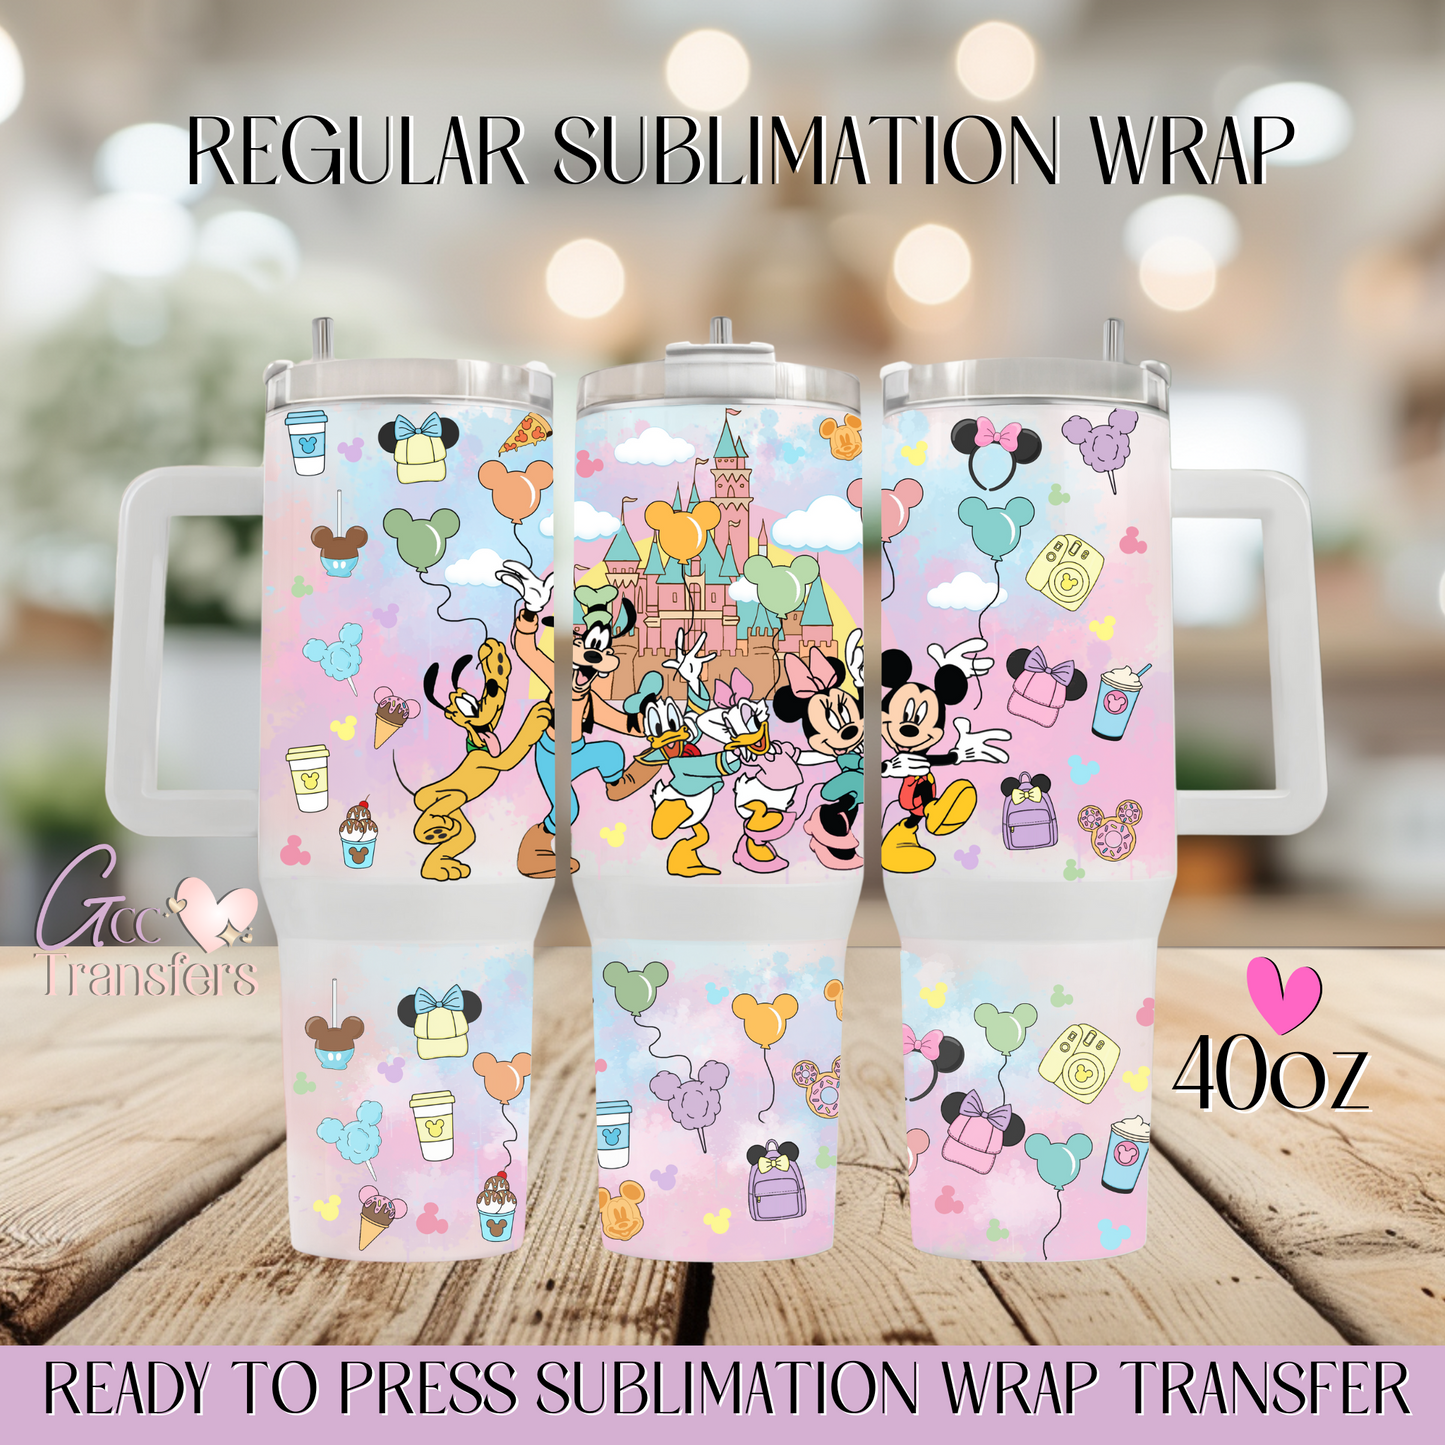 Mouse Magical Castle Friends Colorful - 40oz Regular Sublimation Wrap